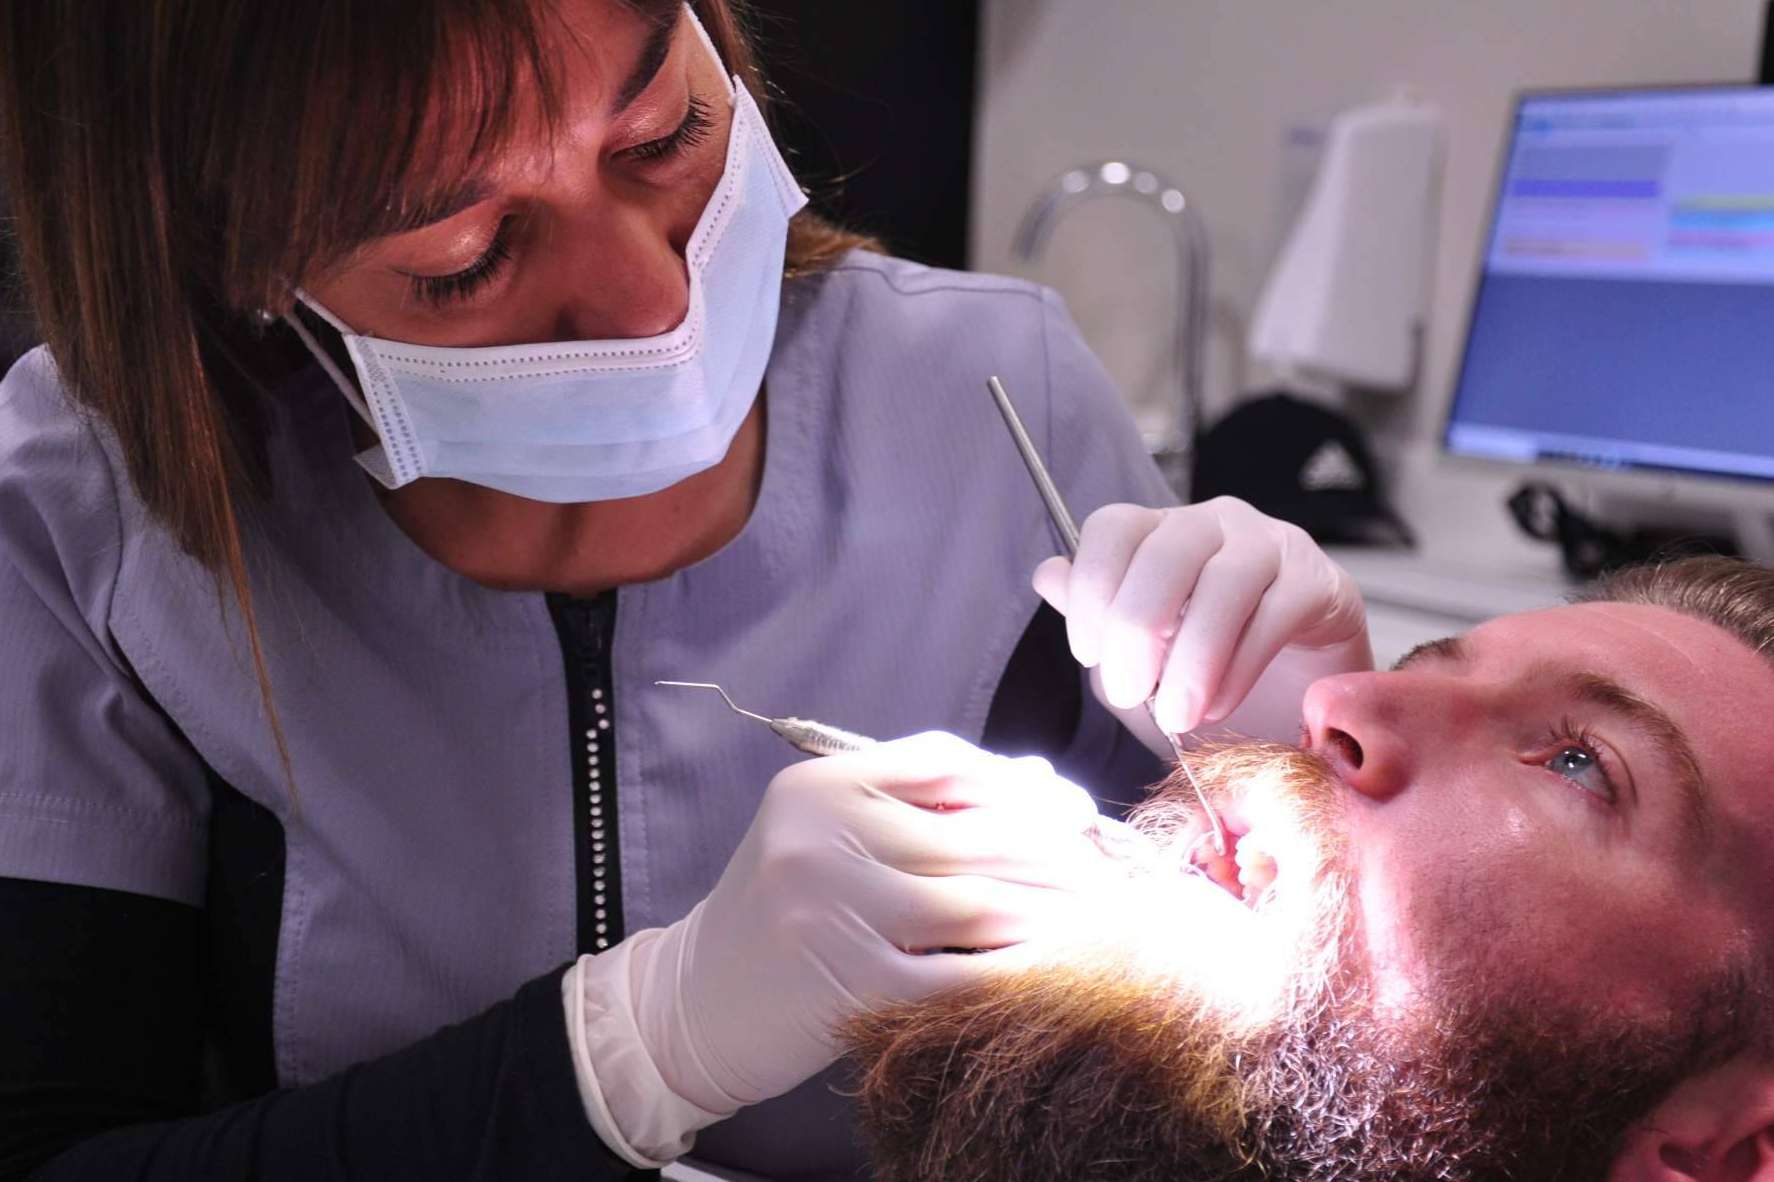 Servicio en implantes dentales de calidad de la mano de Clínica Dental Masot